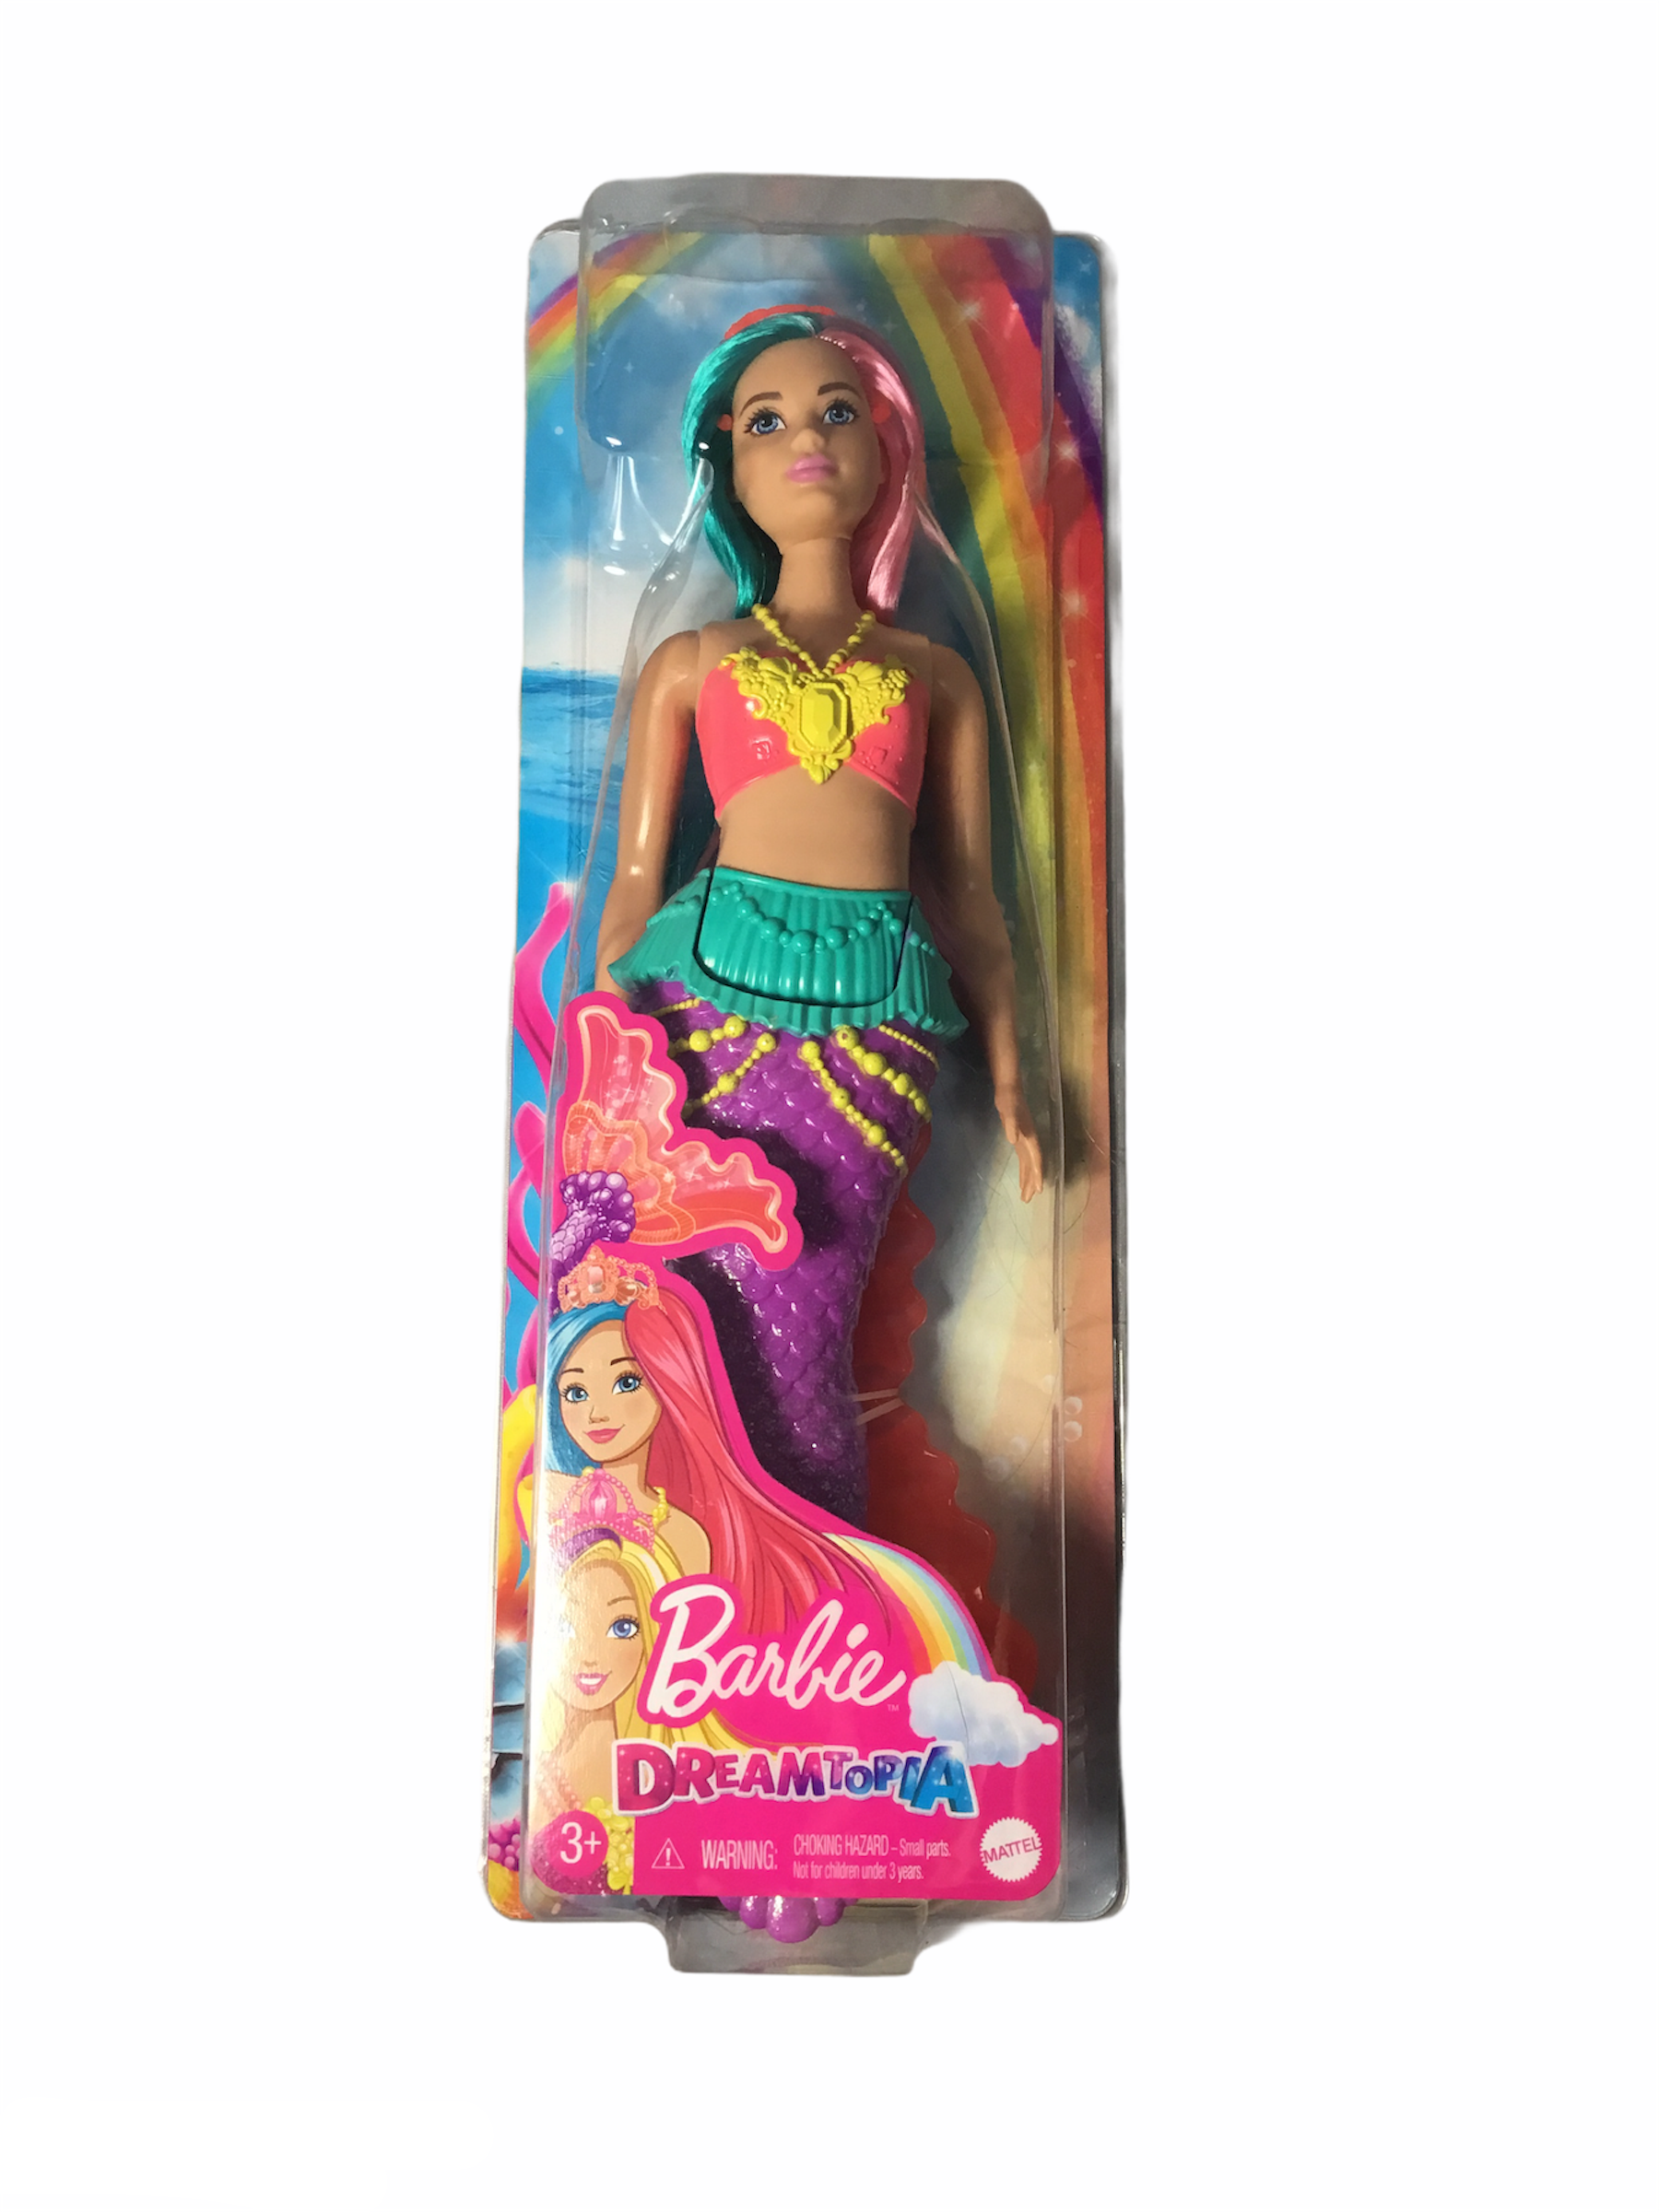 Barbie Dreamtopia Mermaid Doll Teal and Pink Hair